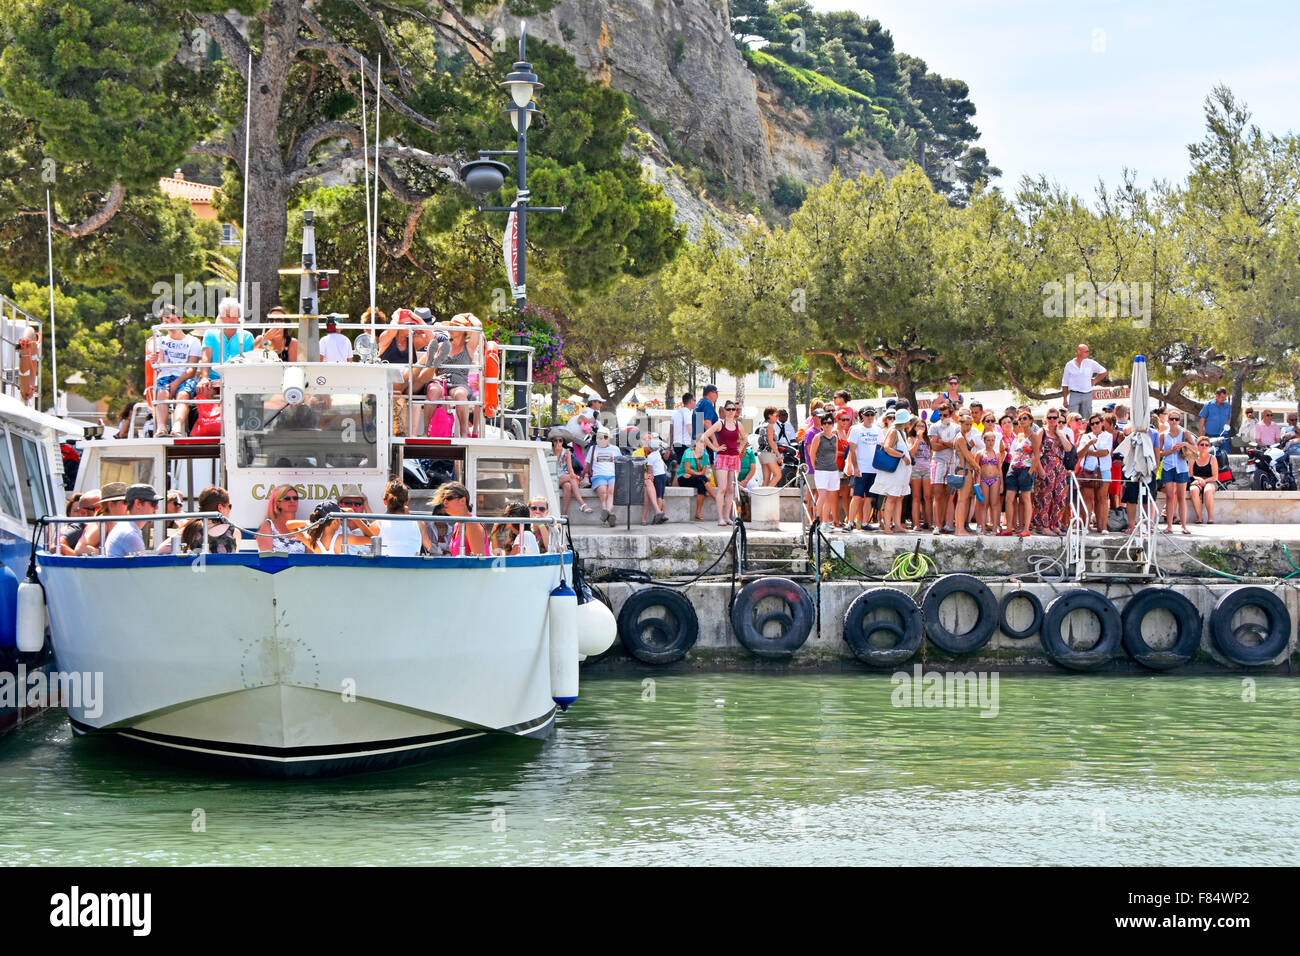 France Provence Cassis port très fréquenté Bateau de tourisme en attente de départ voyage à Calanque calanques foule de personnes en attente de la mur bateau tampons des pneus Banque D'Images